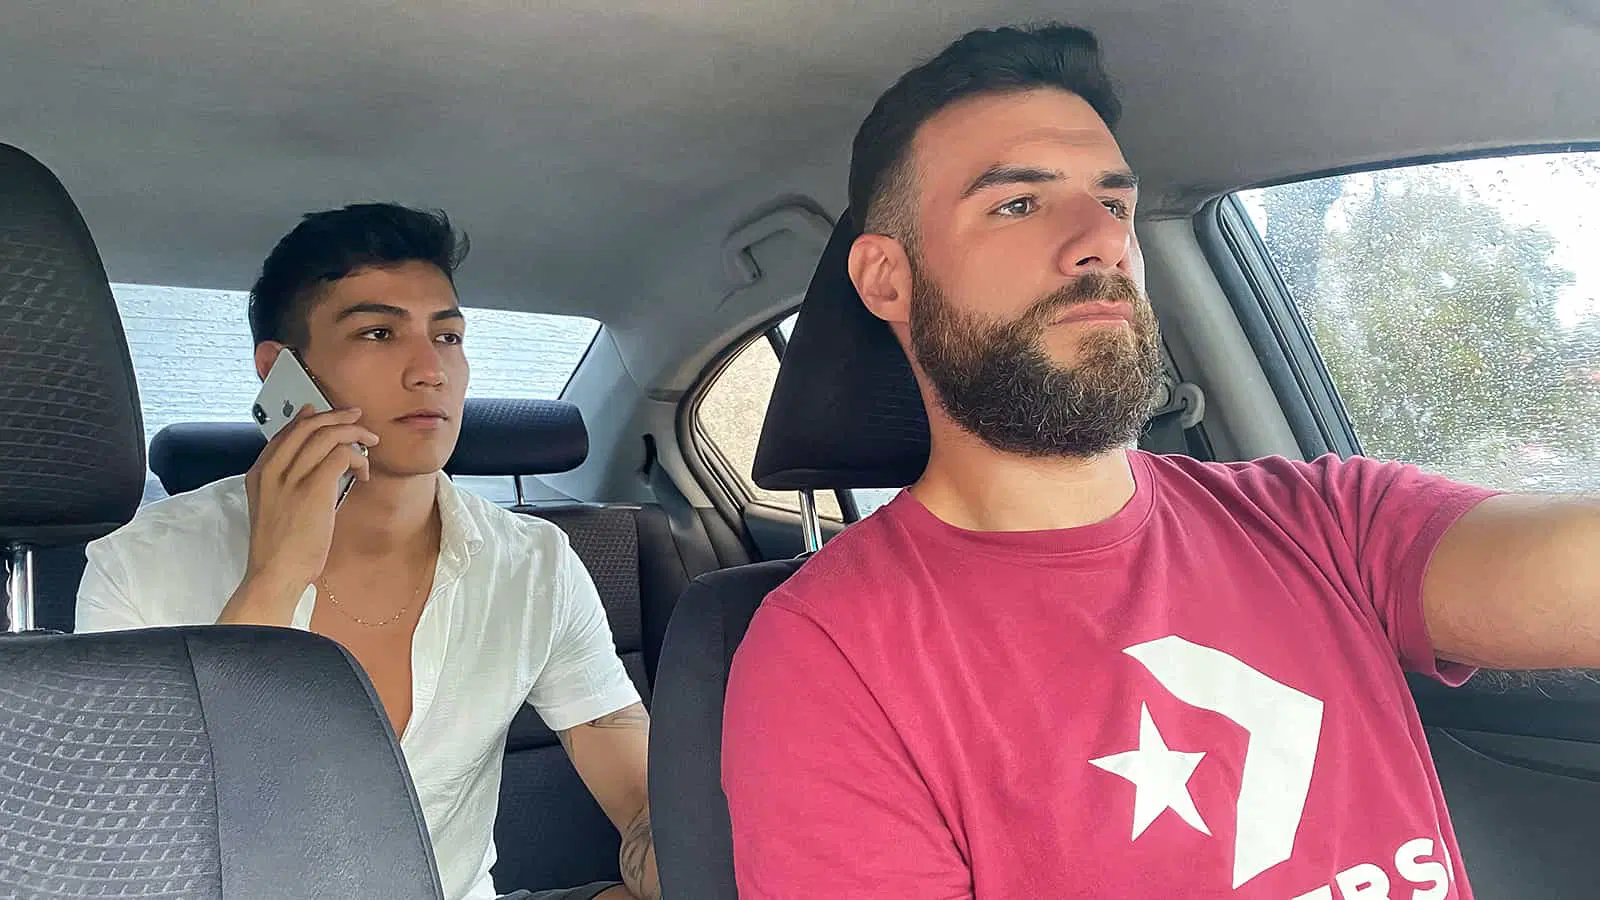 Driver’s Call – Felipe Kum and Rodrigo El Santo